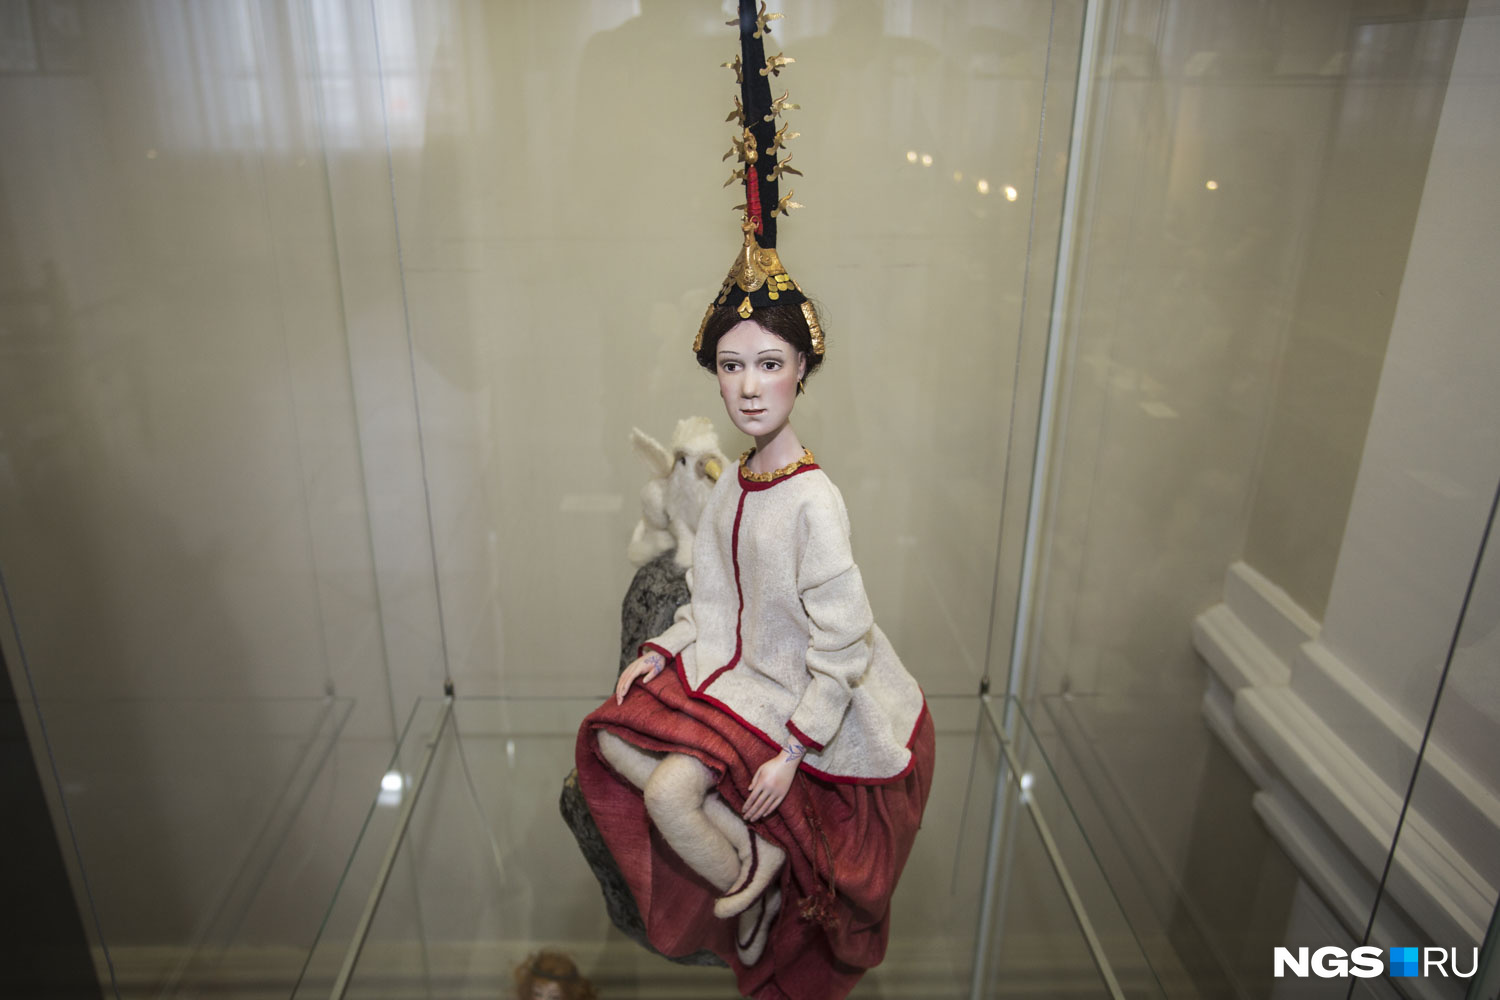 Кукла «Принцесса Укока» победила в номинации «Сибирские истории»